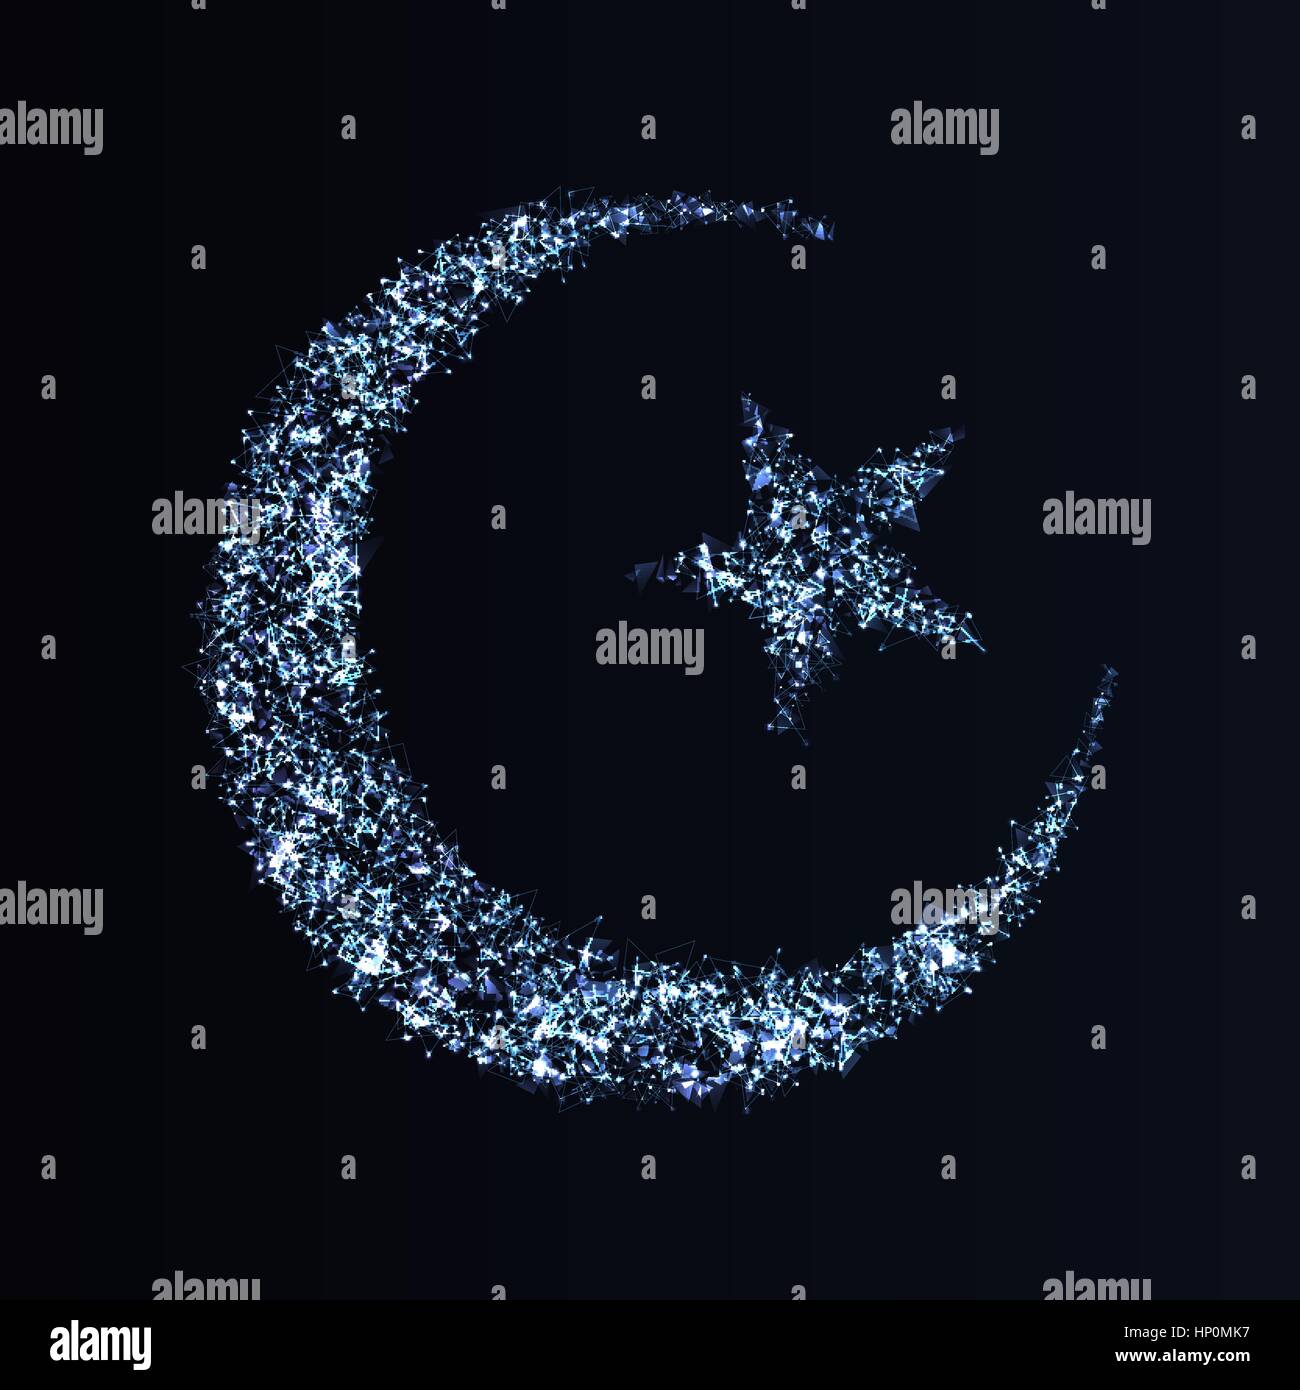 Eid Mubarak greeting card design. Abstract mezzaluna e stella fatta di elementi poligonali, puntini luminosi e particelle per il mese sacro dei musulmani comm Illustrazione Vettoriale